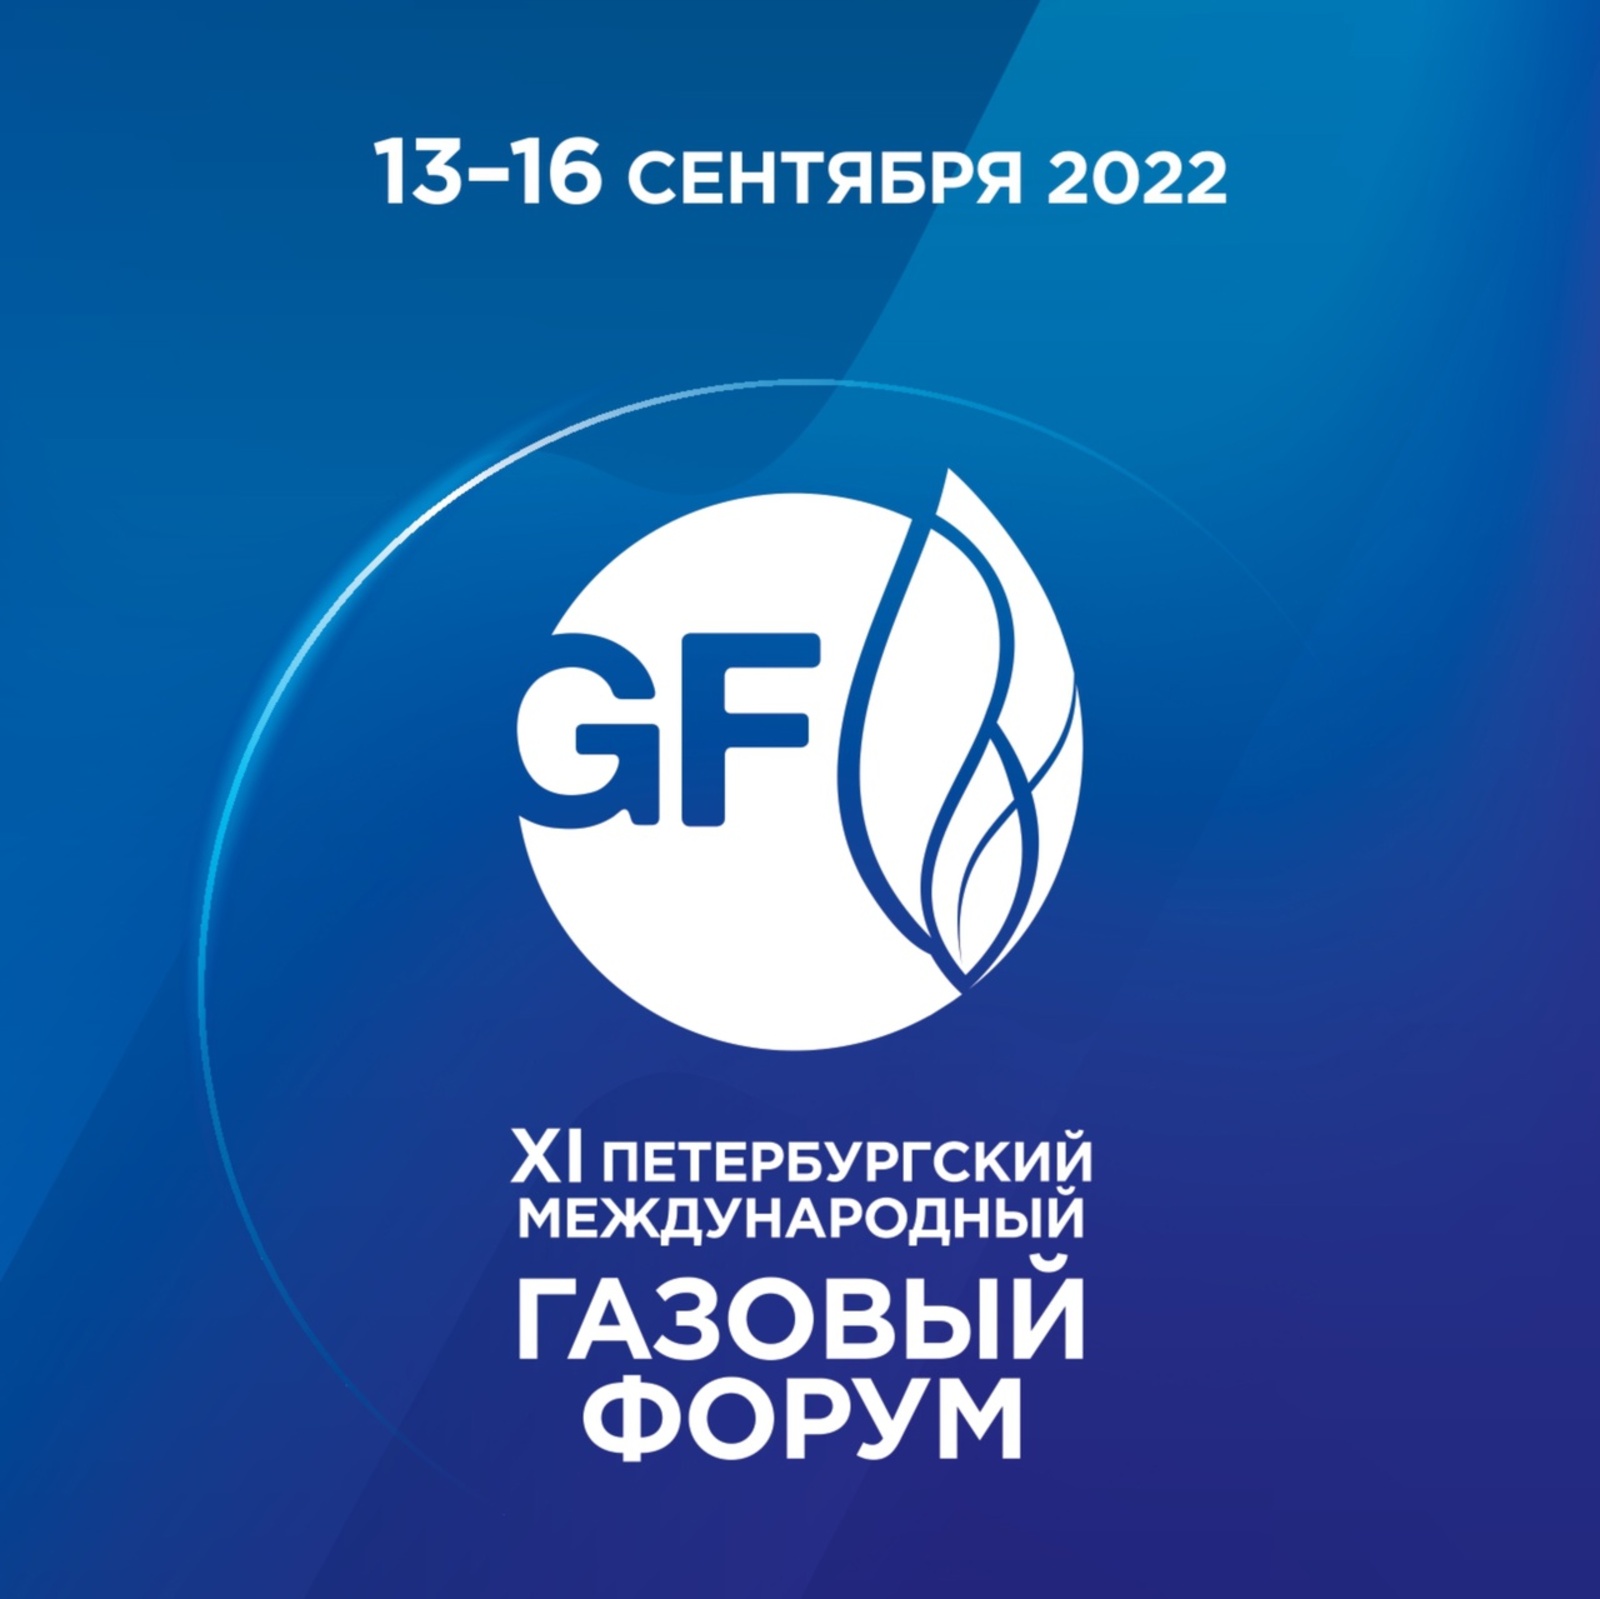 Башкирия на ПМГФ-2022